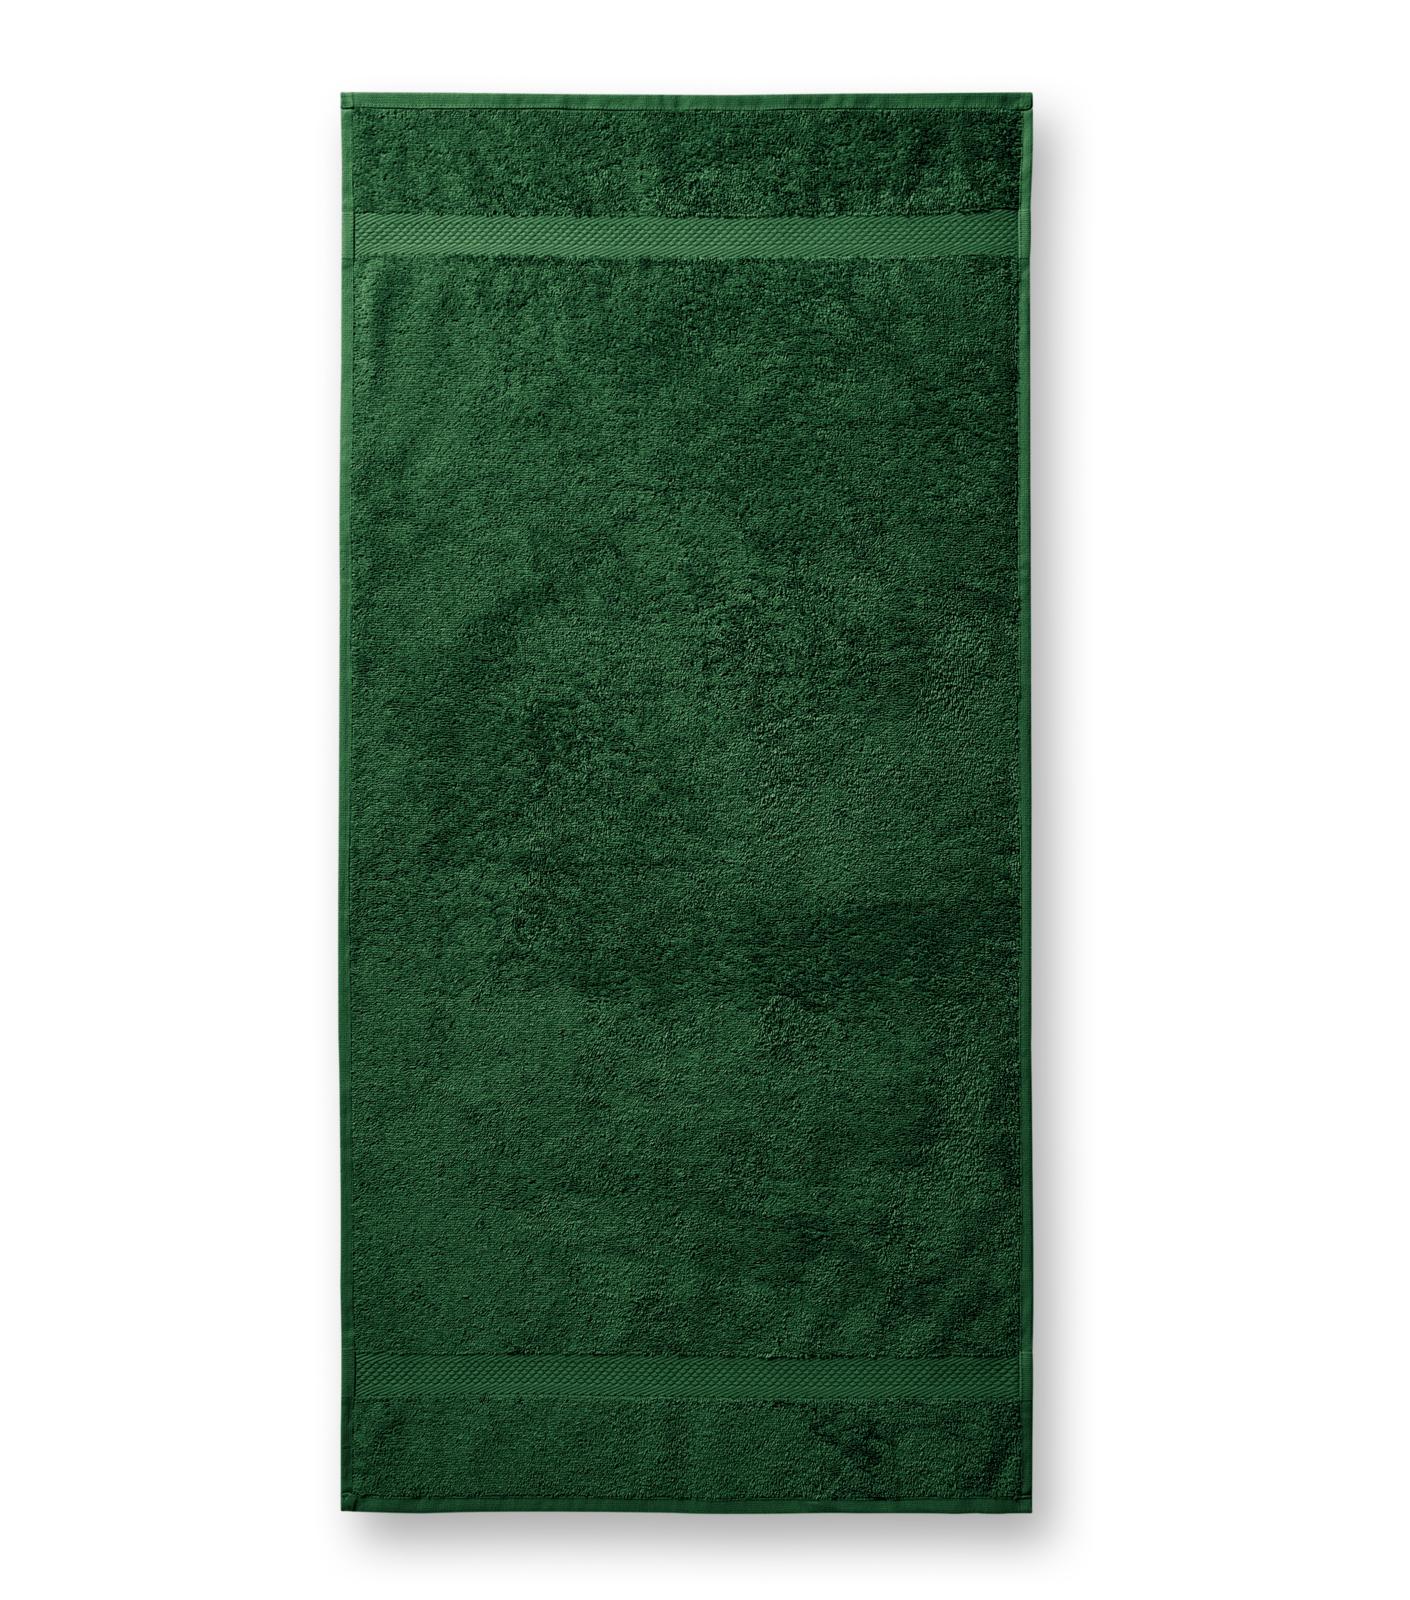 Terija cilpiņu auduma dvielis. Izmēr 50 x 100 cm. Tumši zaļā krāsā ar bodņu abos galos.